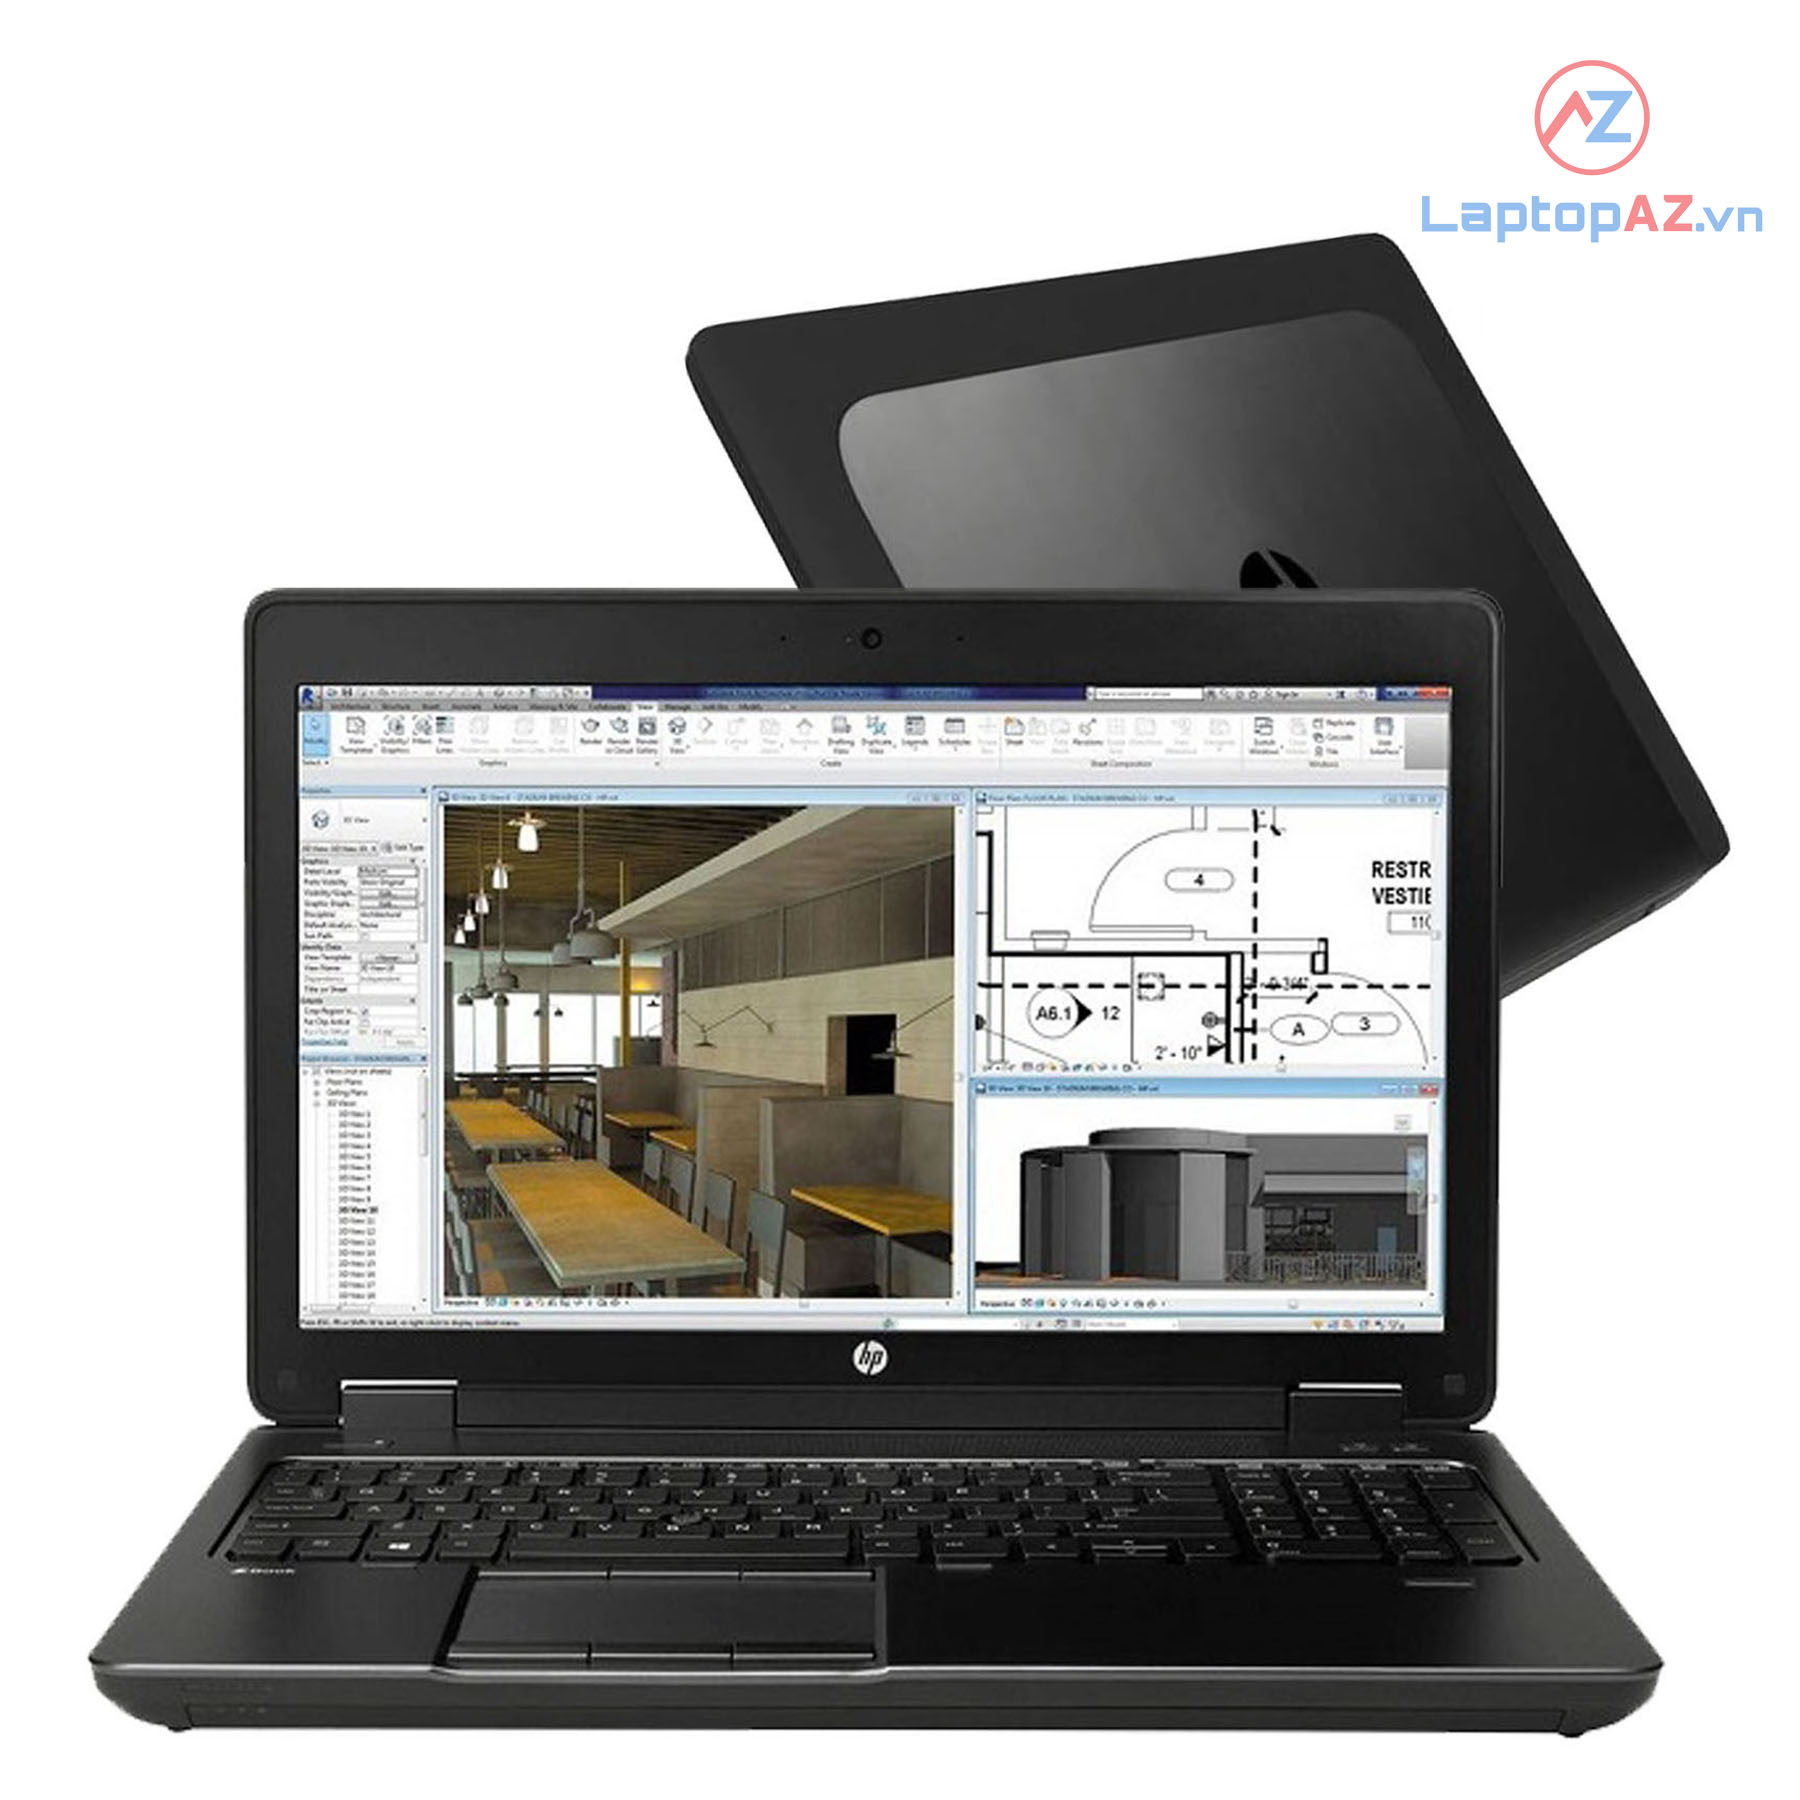 Laptop cũ HP Zbook 15 G2 (Core i7-4810MQ, 8GB, 256GB, VGA NVIDIA K2100M, 15.6 inch FHD)